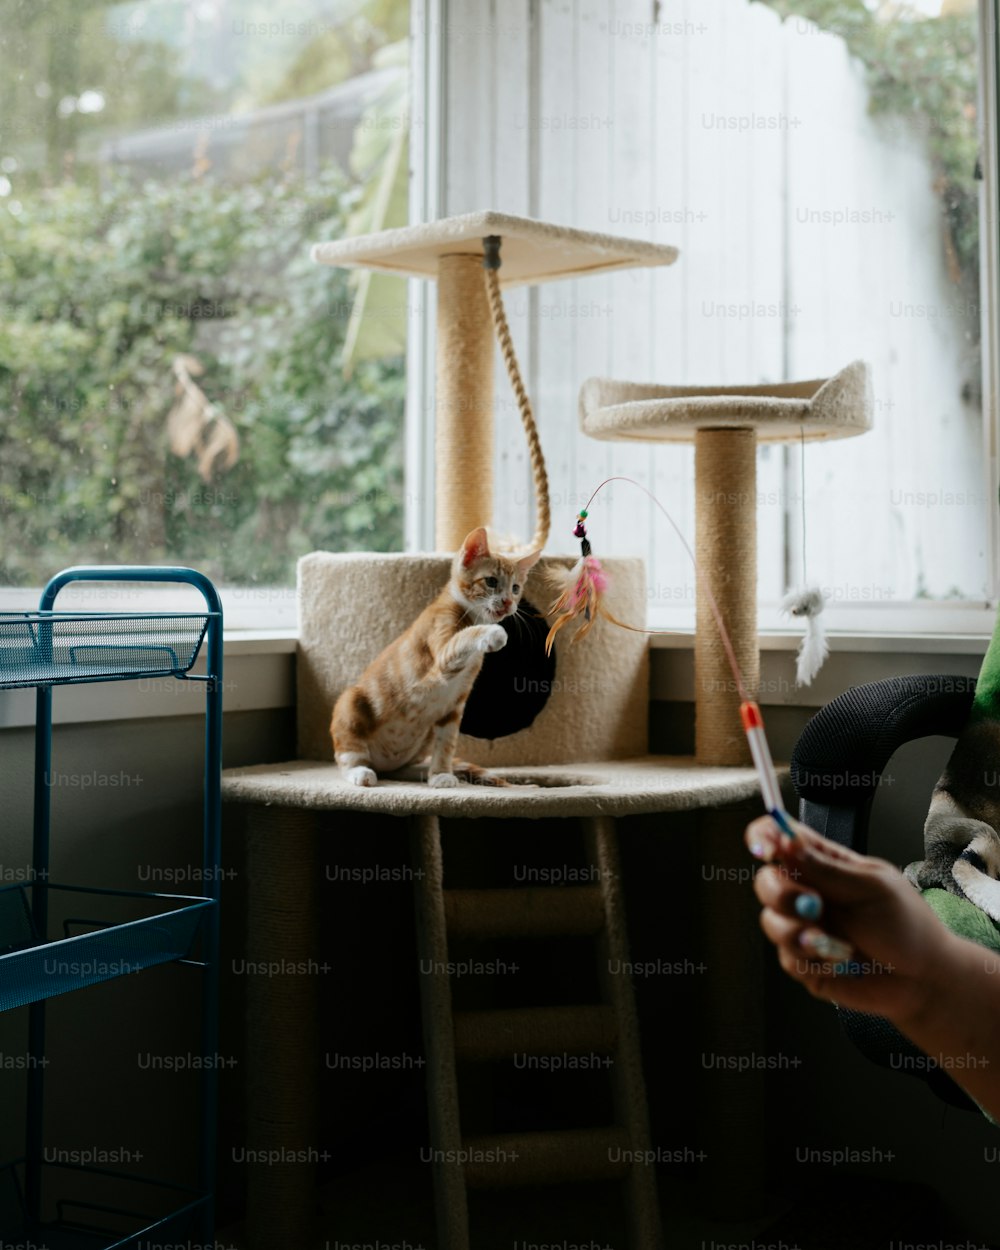 창문 옆 긁는 기둥 위에 앉아 있는 고양이